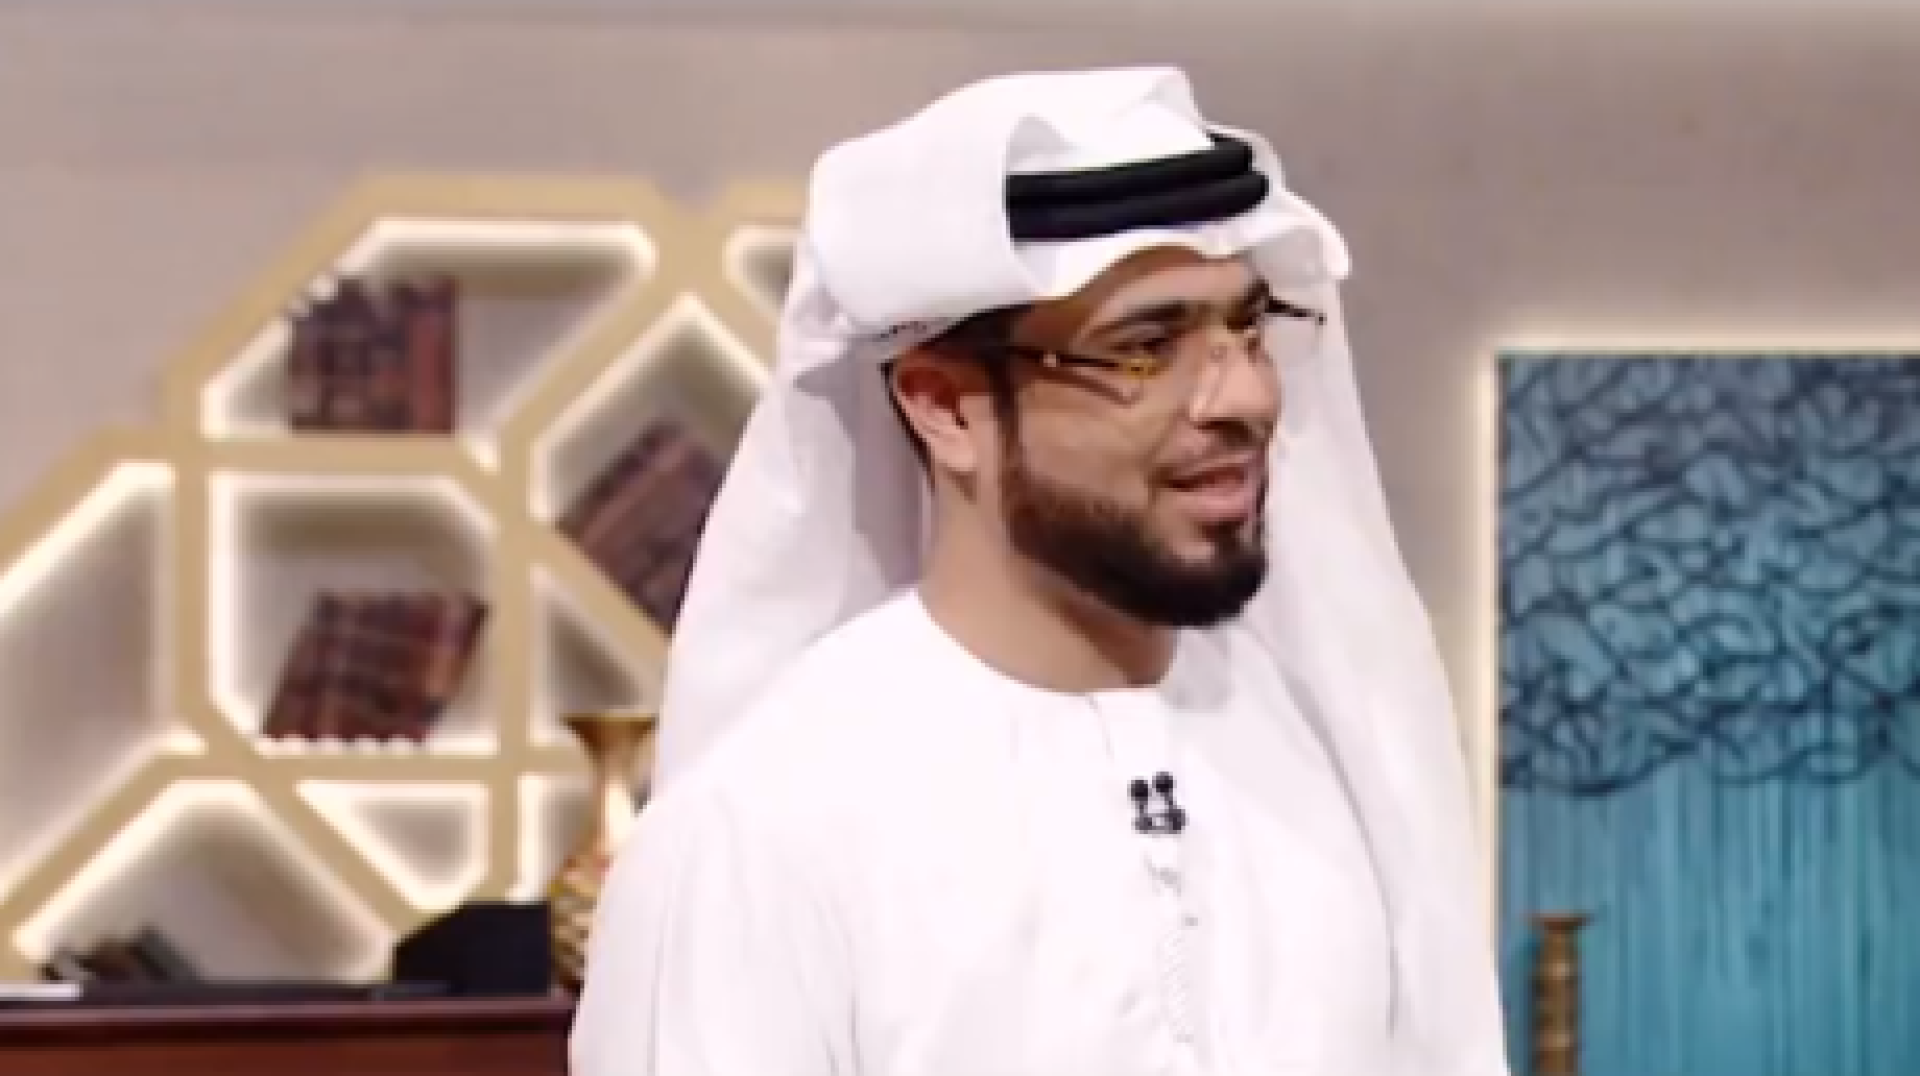 بفيديو مؤثر الداعية الإماراتي وسيم يوسف يعلن إصابته بـ